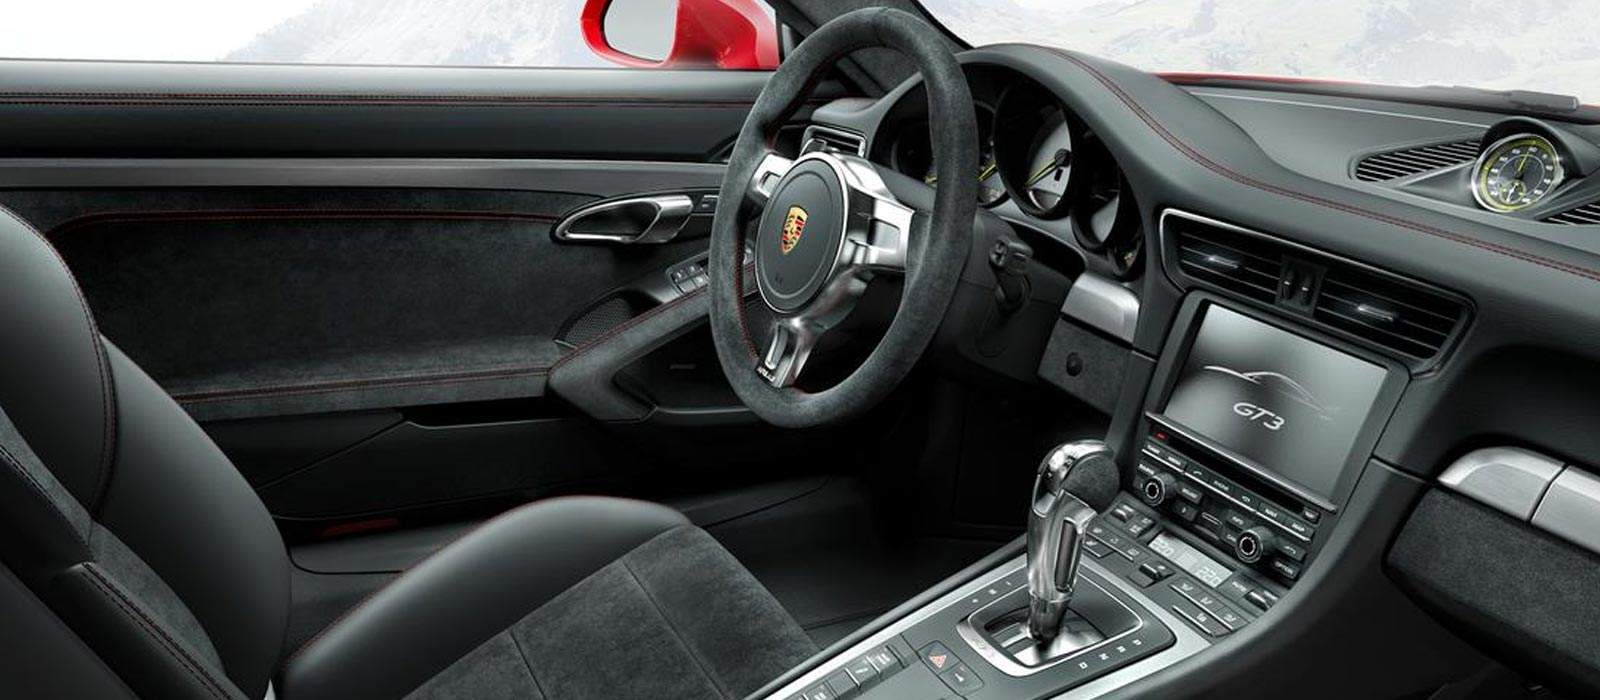 Porsche GT3 Interior